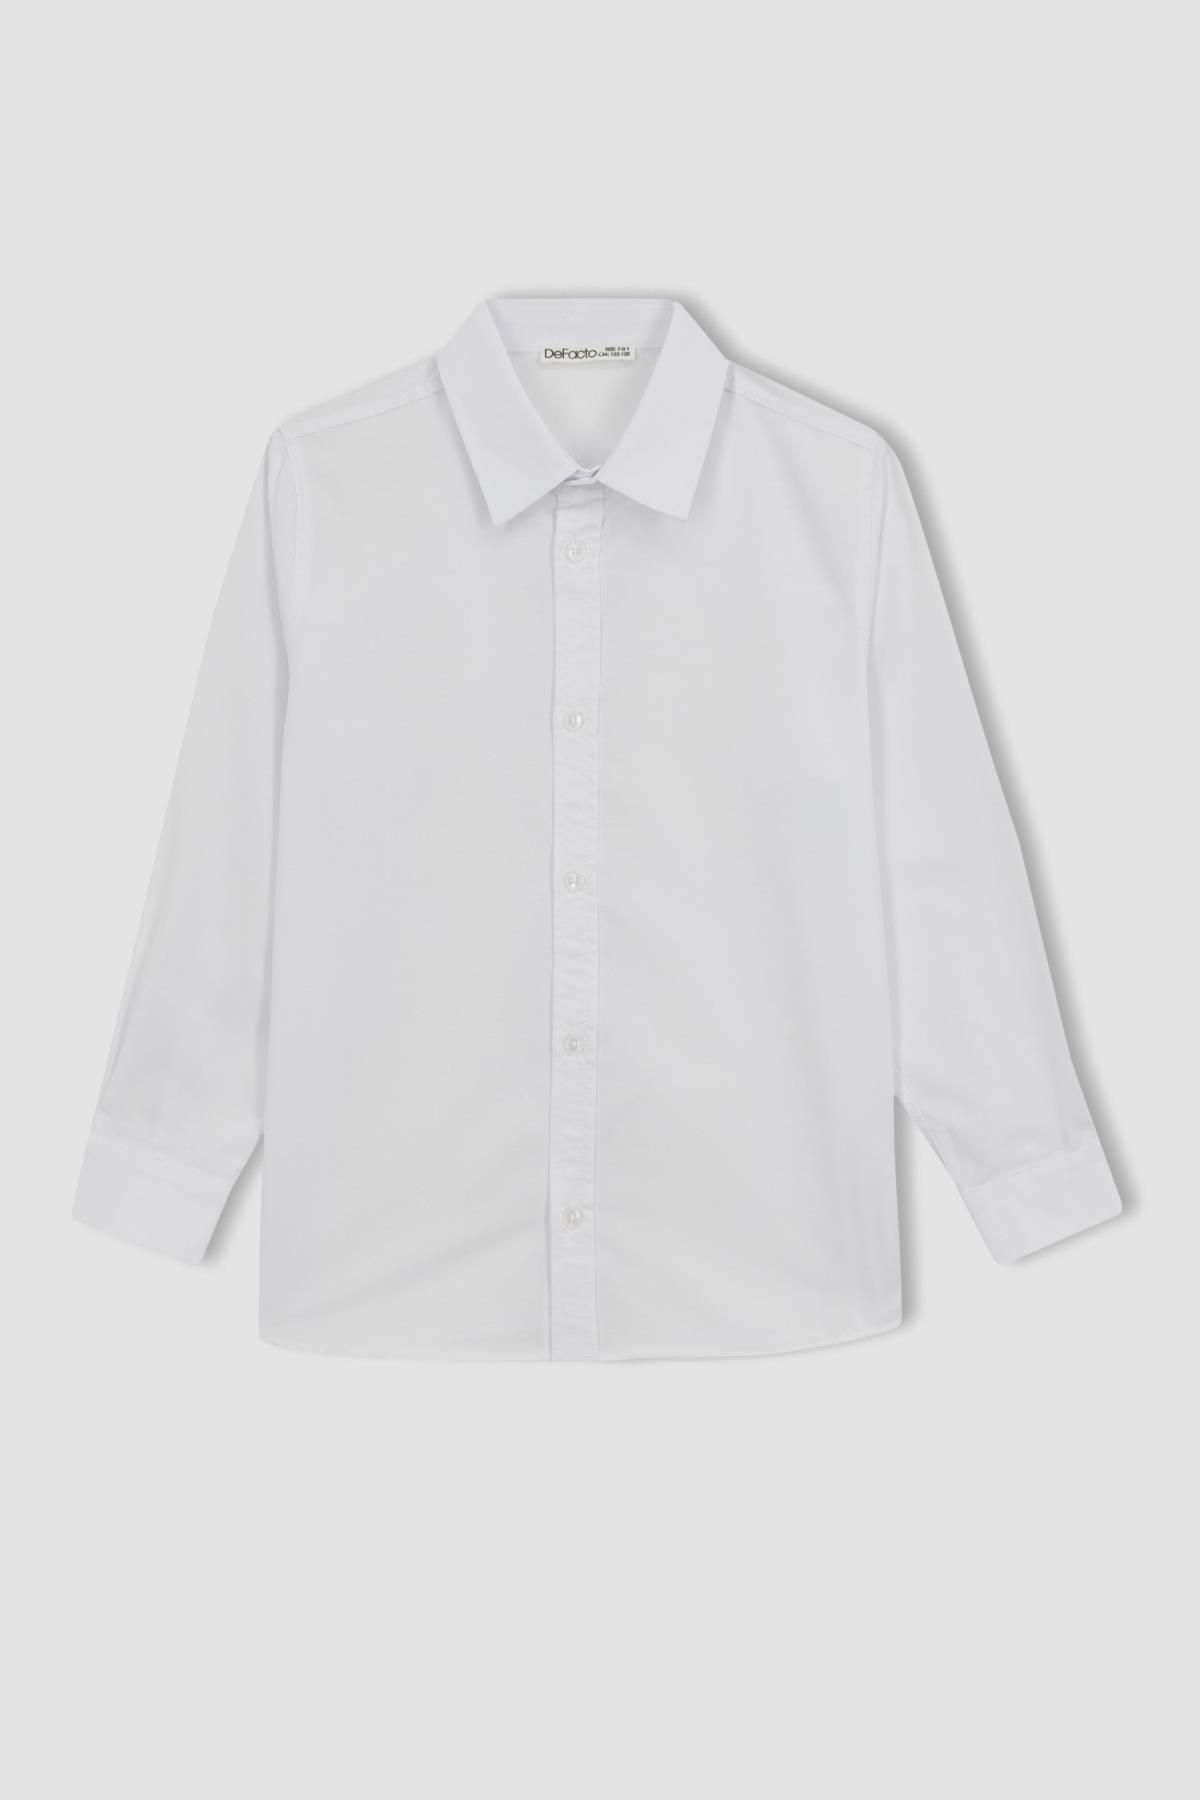 Defacto Erkek Çocuk Beyaz Keten Görünümlü Uzun Kollu Okul Gömleği